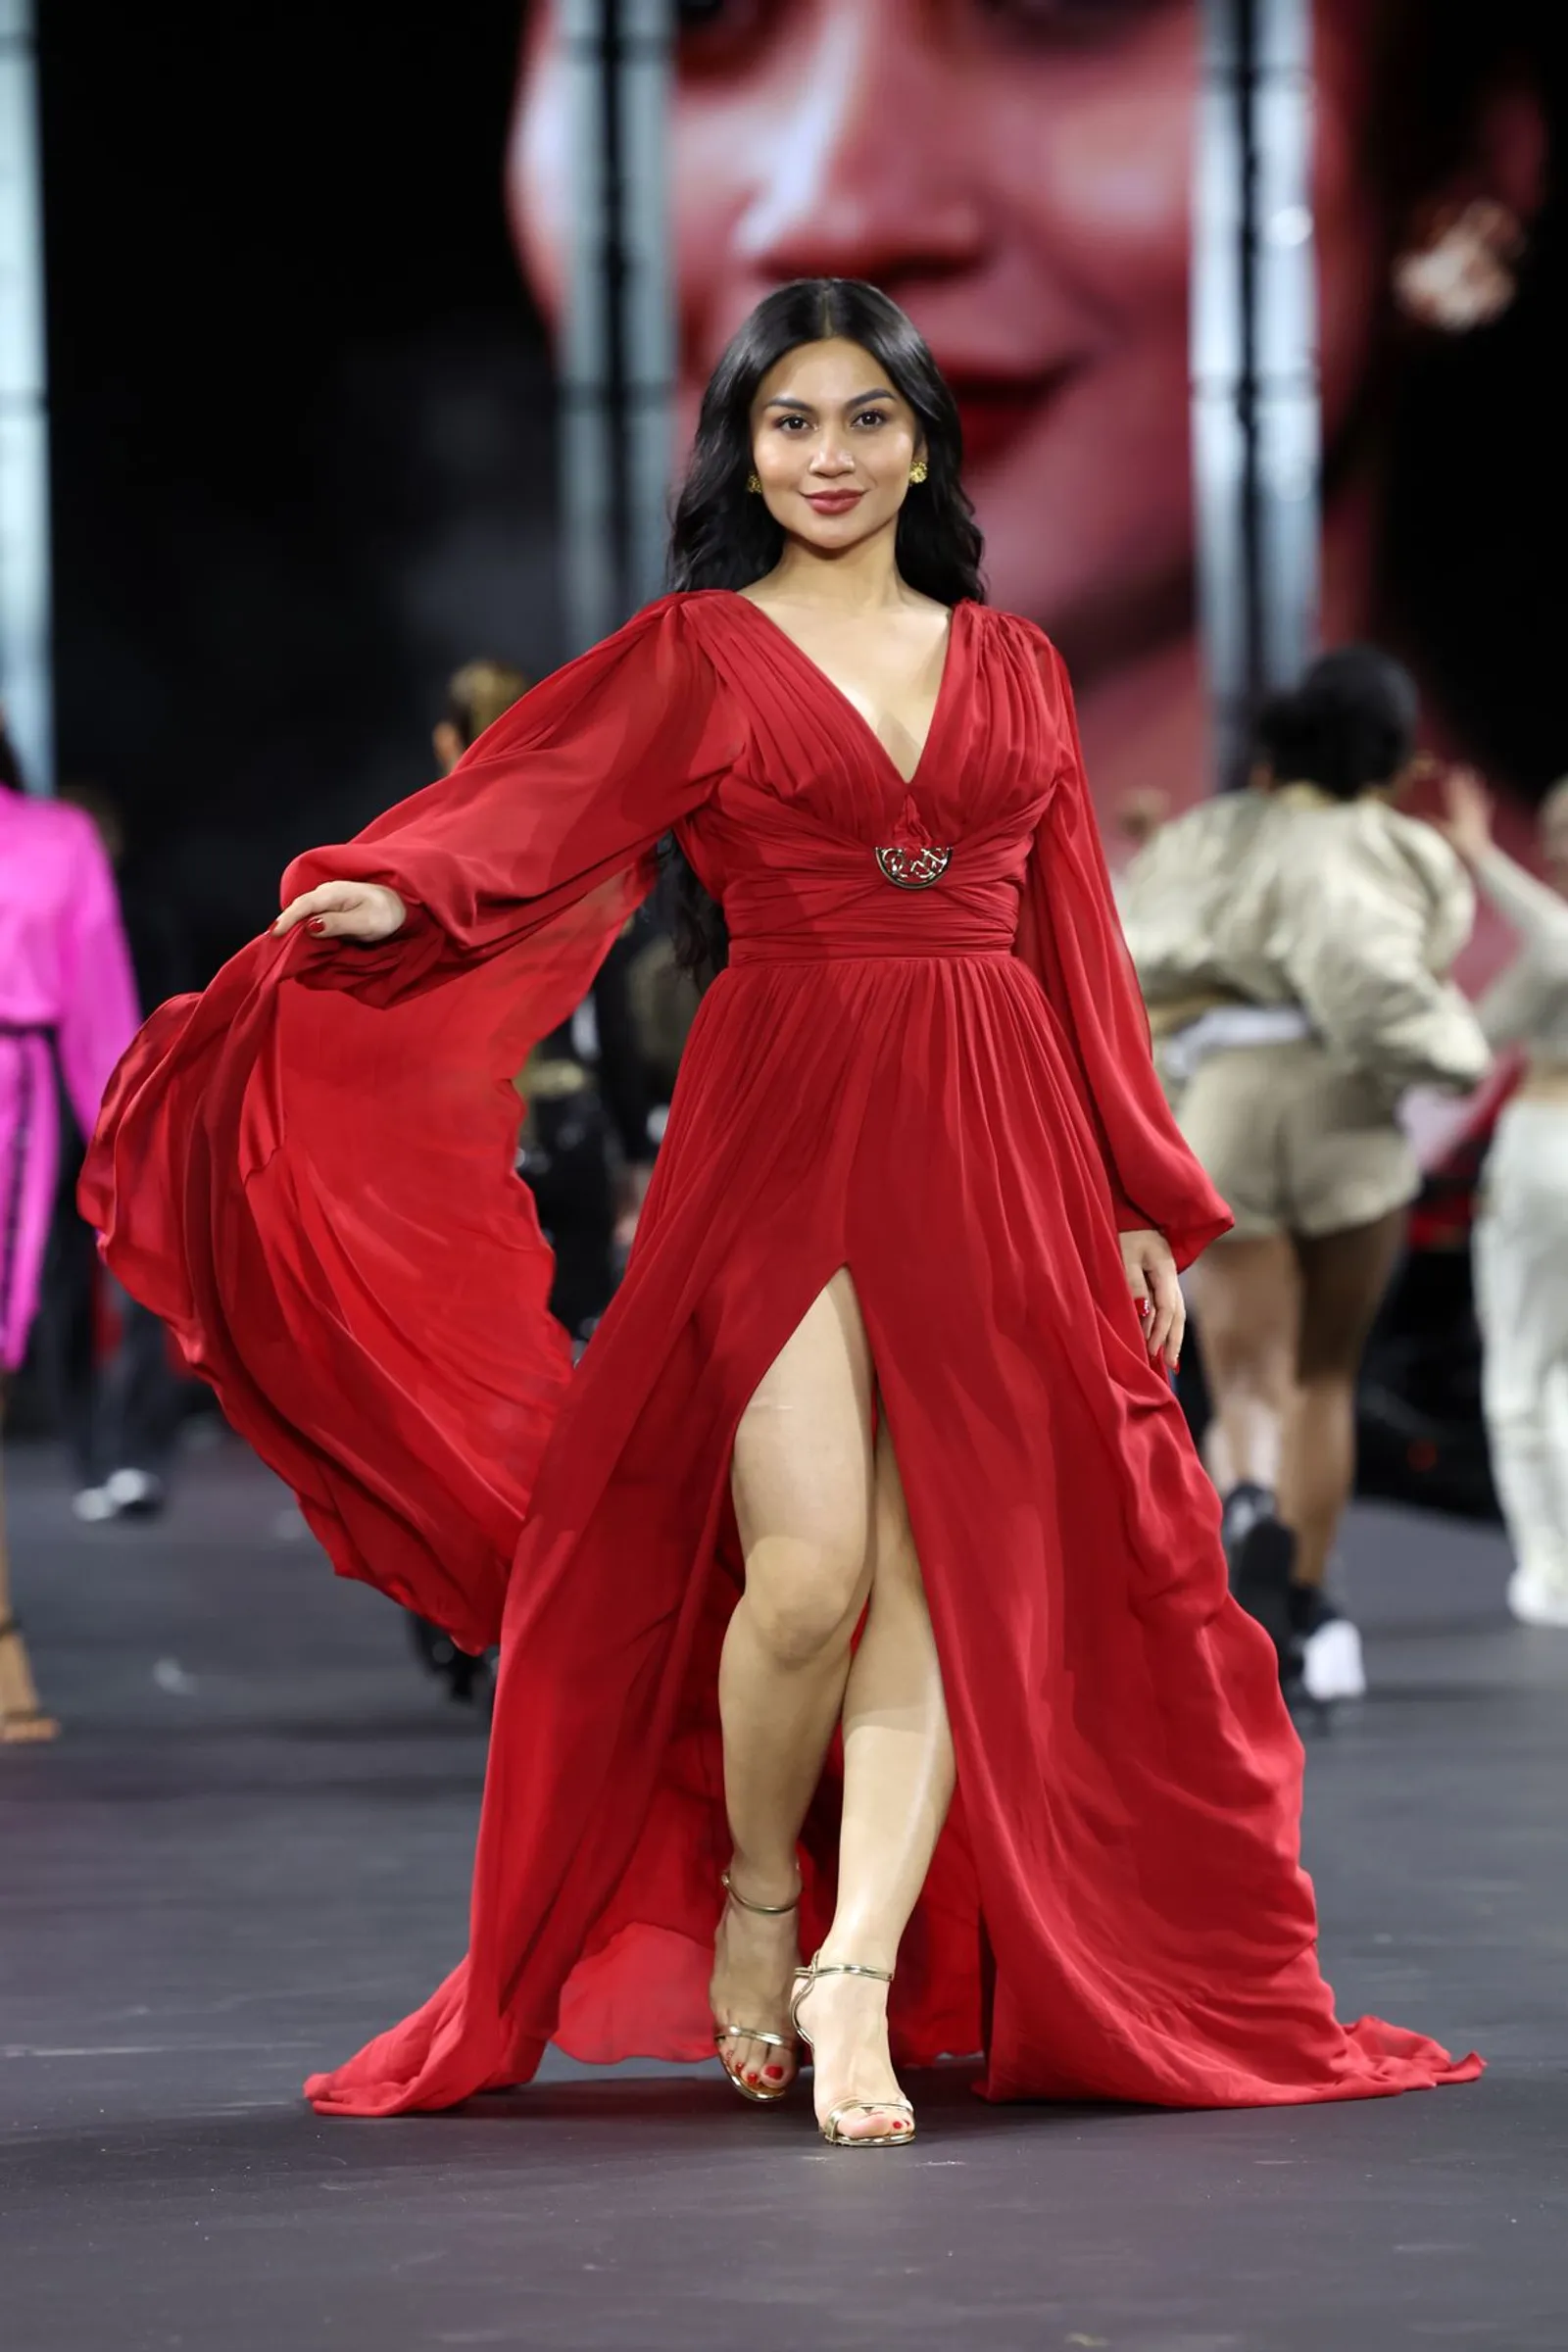 Penampilan Sensual Ariel Tatum saat Jalan di Runway Paris Fashion Week